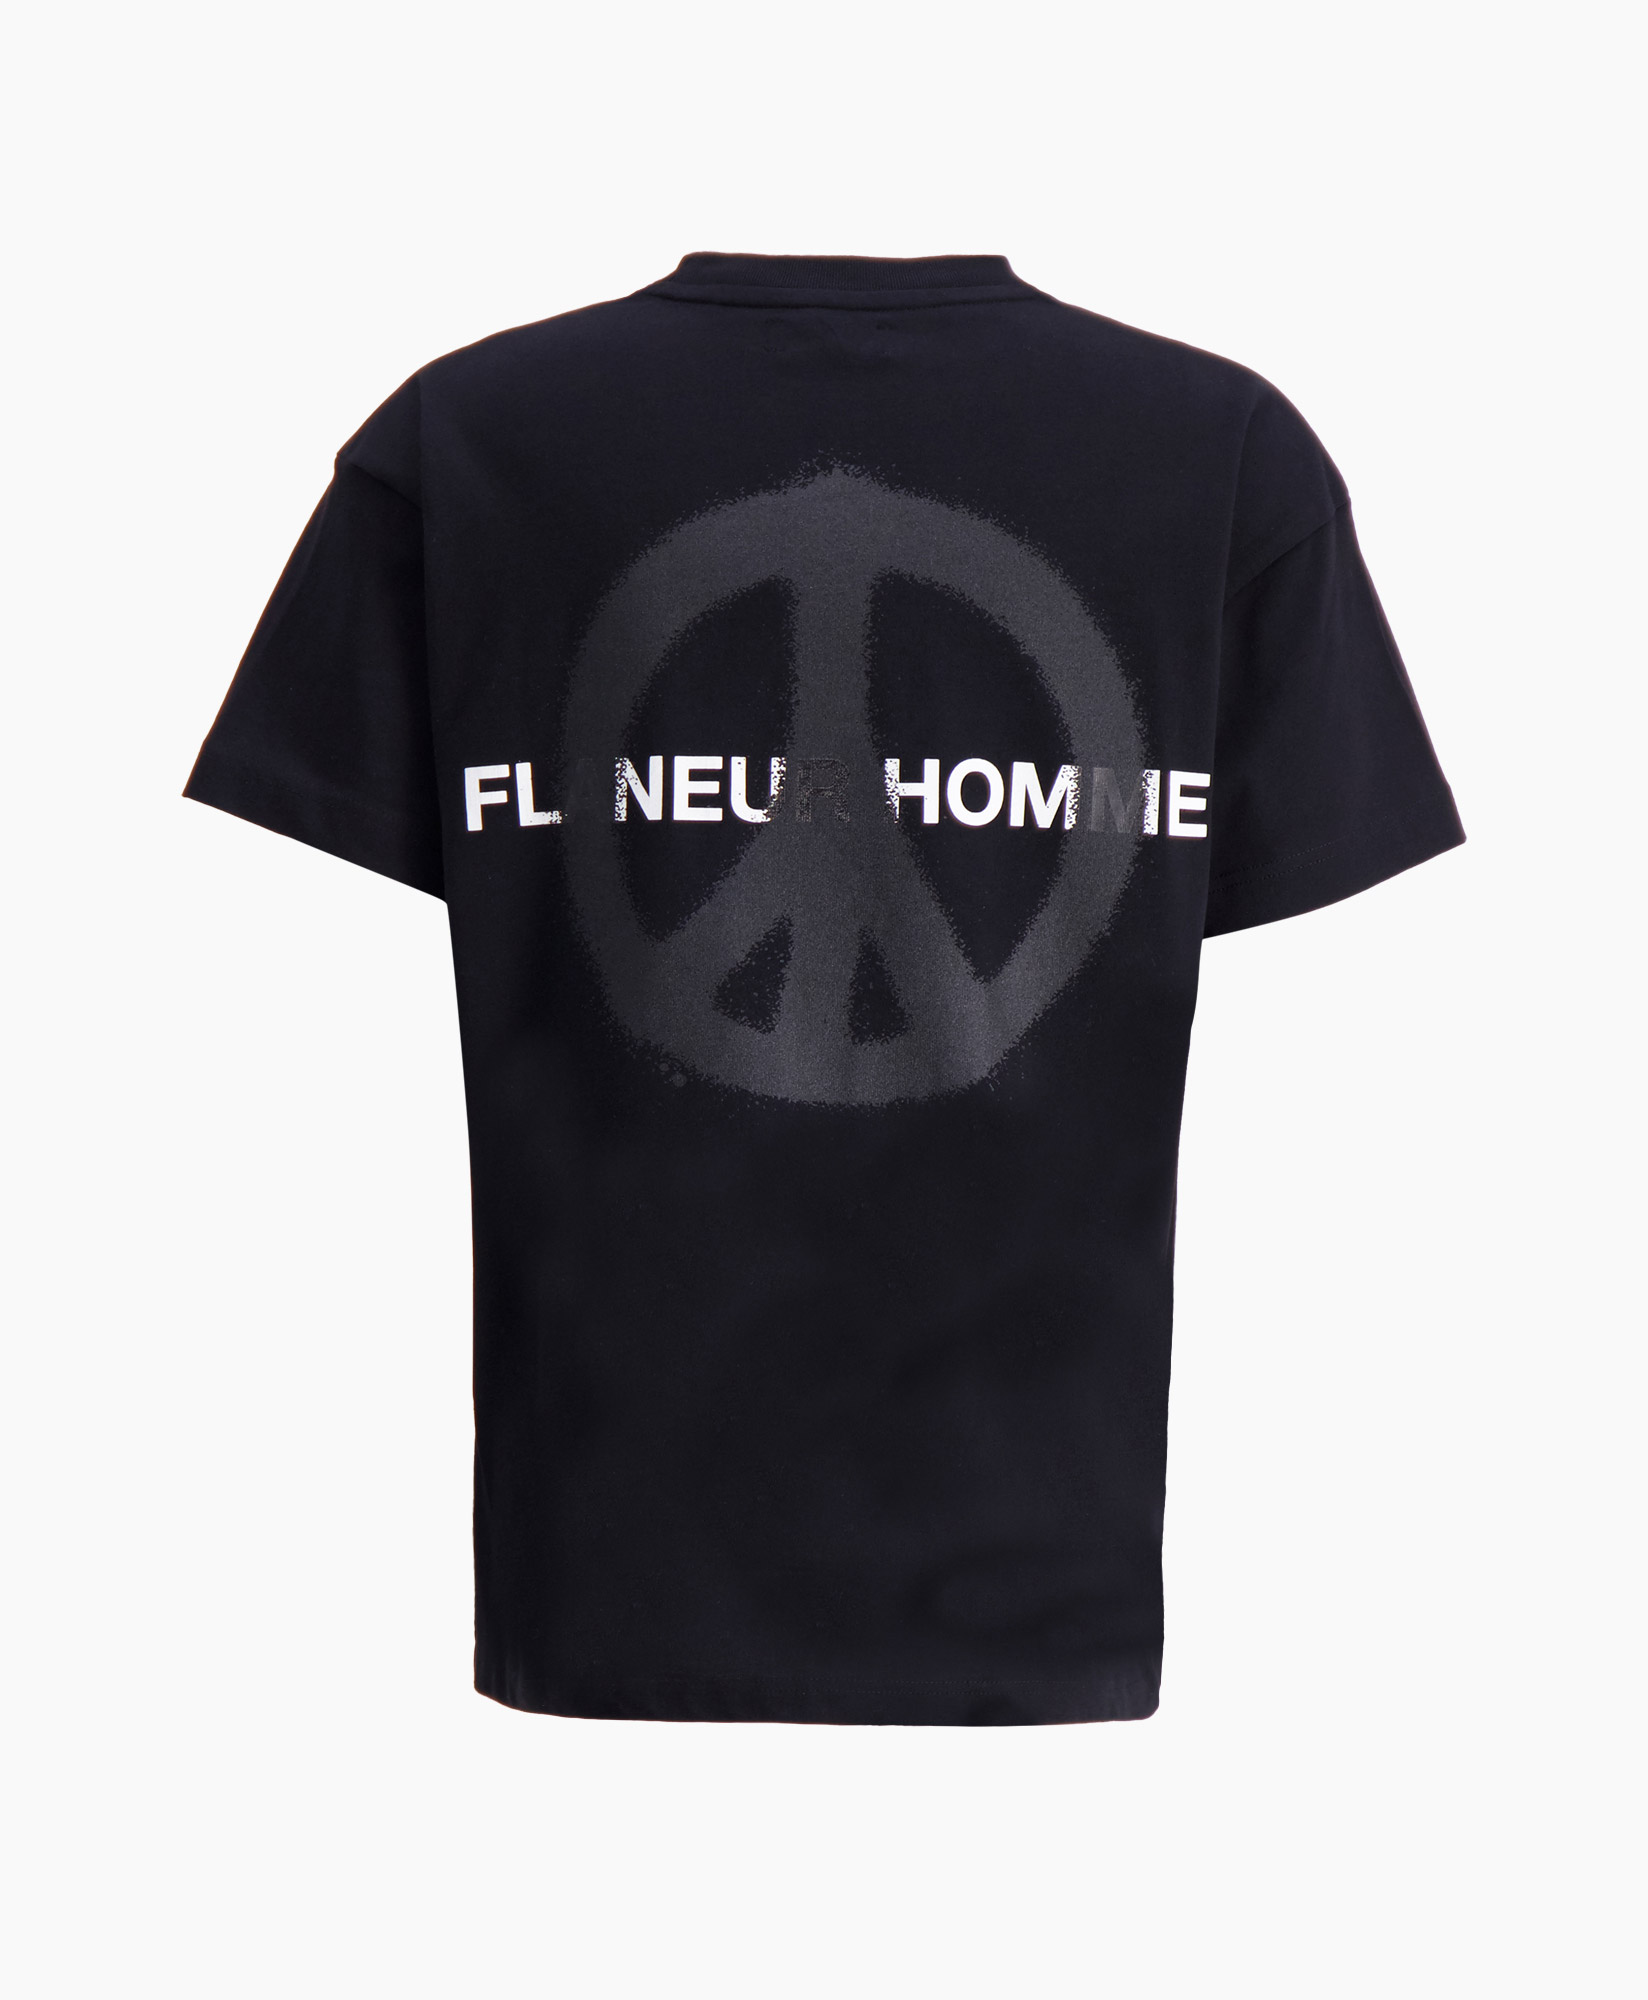 Flaneur Homme T-shirt Korte Mouw Peace T-shirt Zwart